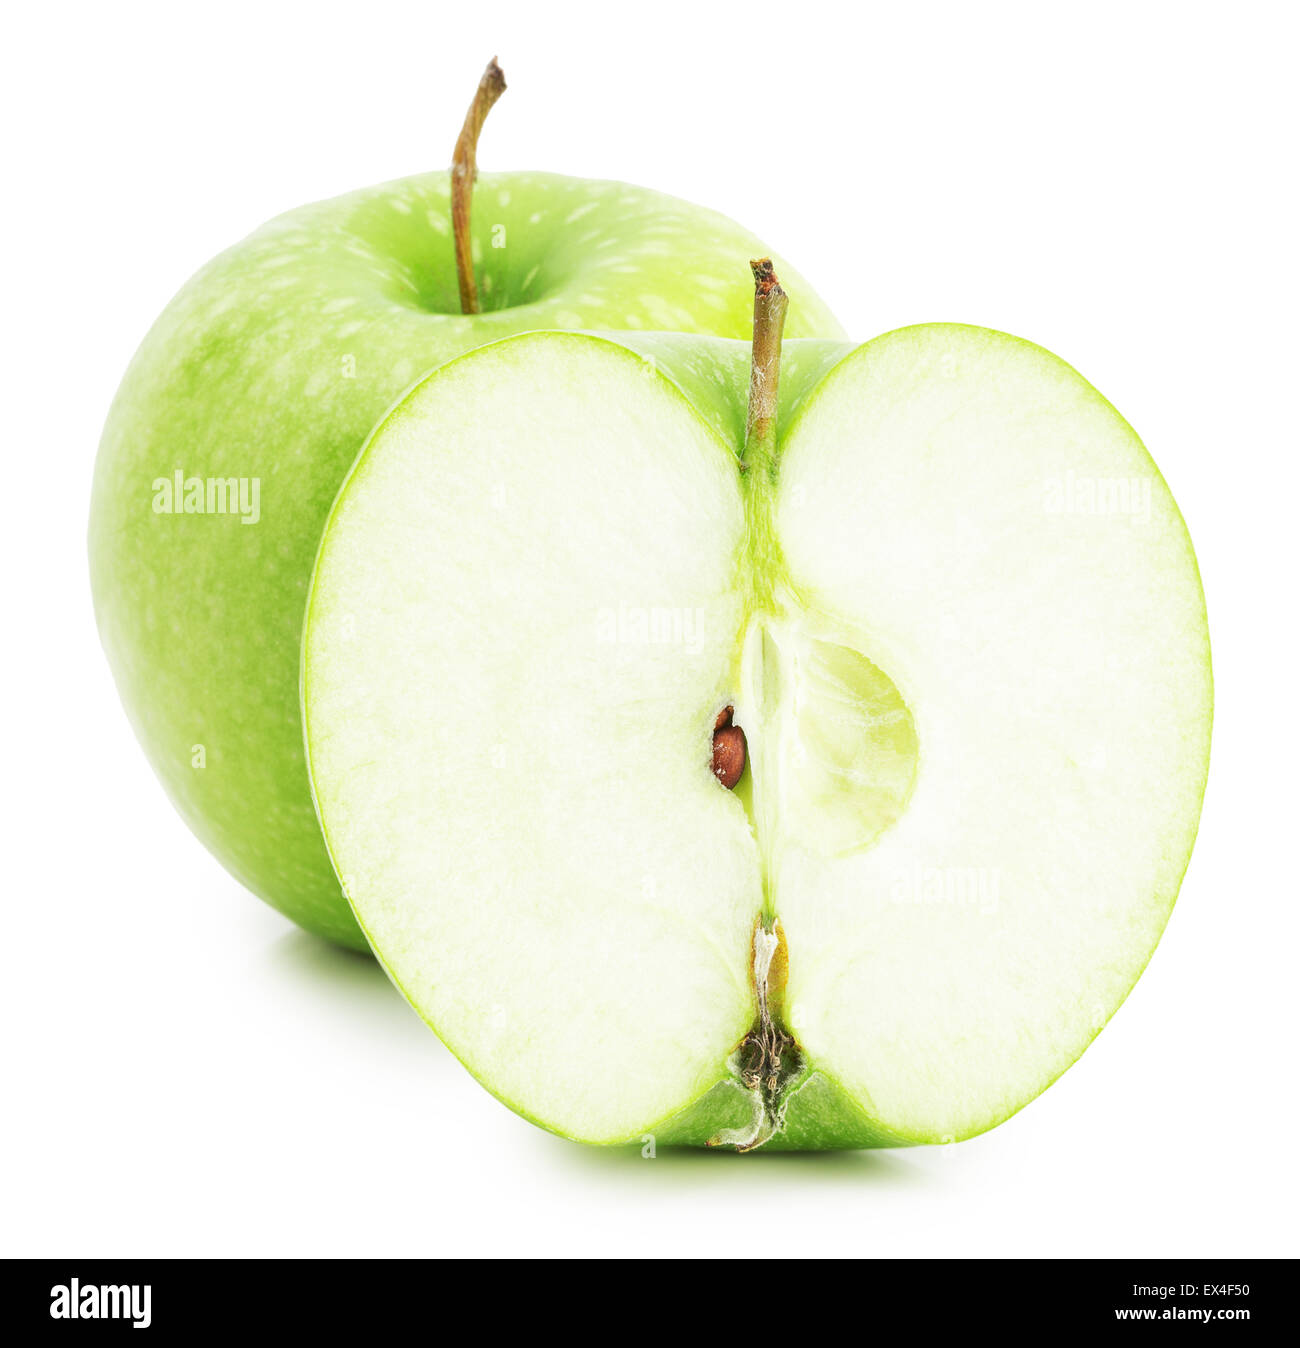 La pomme verte avec la moitié d'apple isolé sur le fond blanc. Banque D'Images